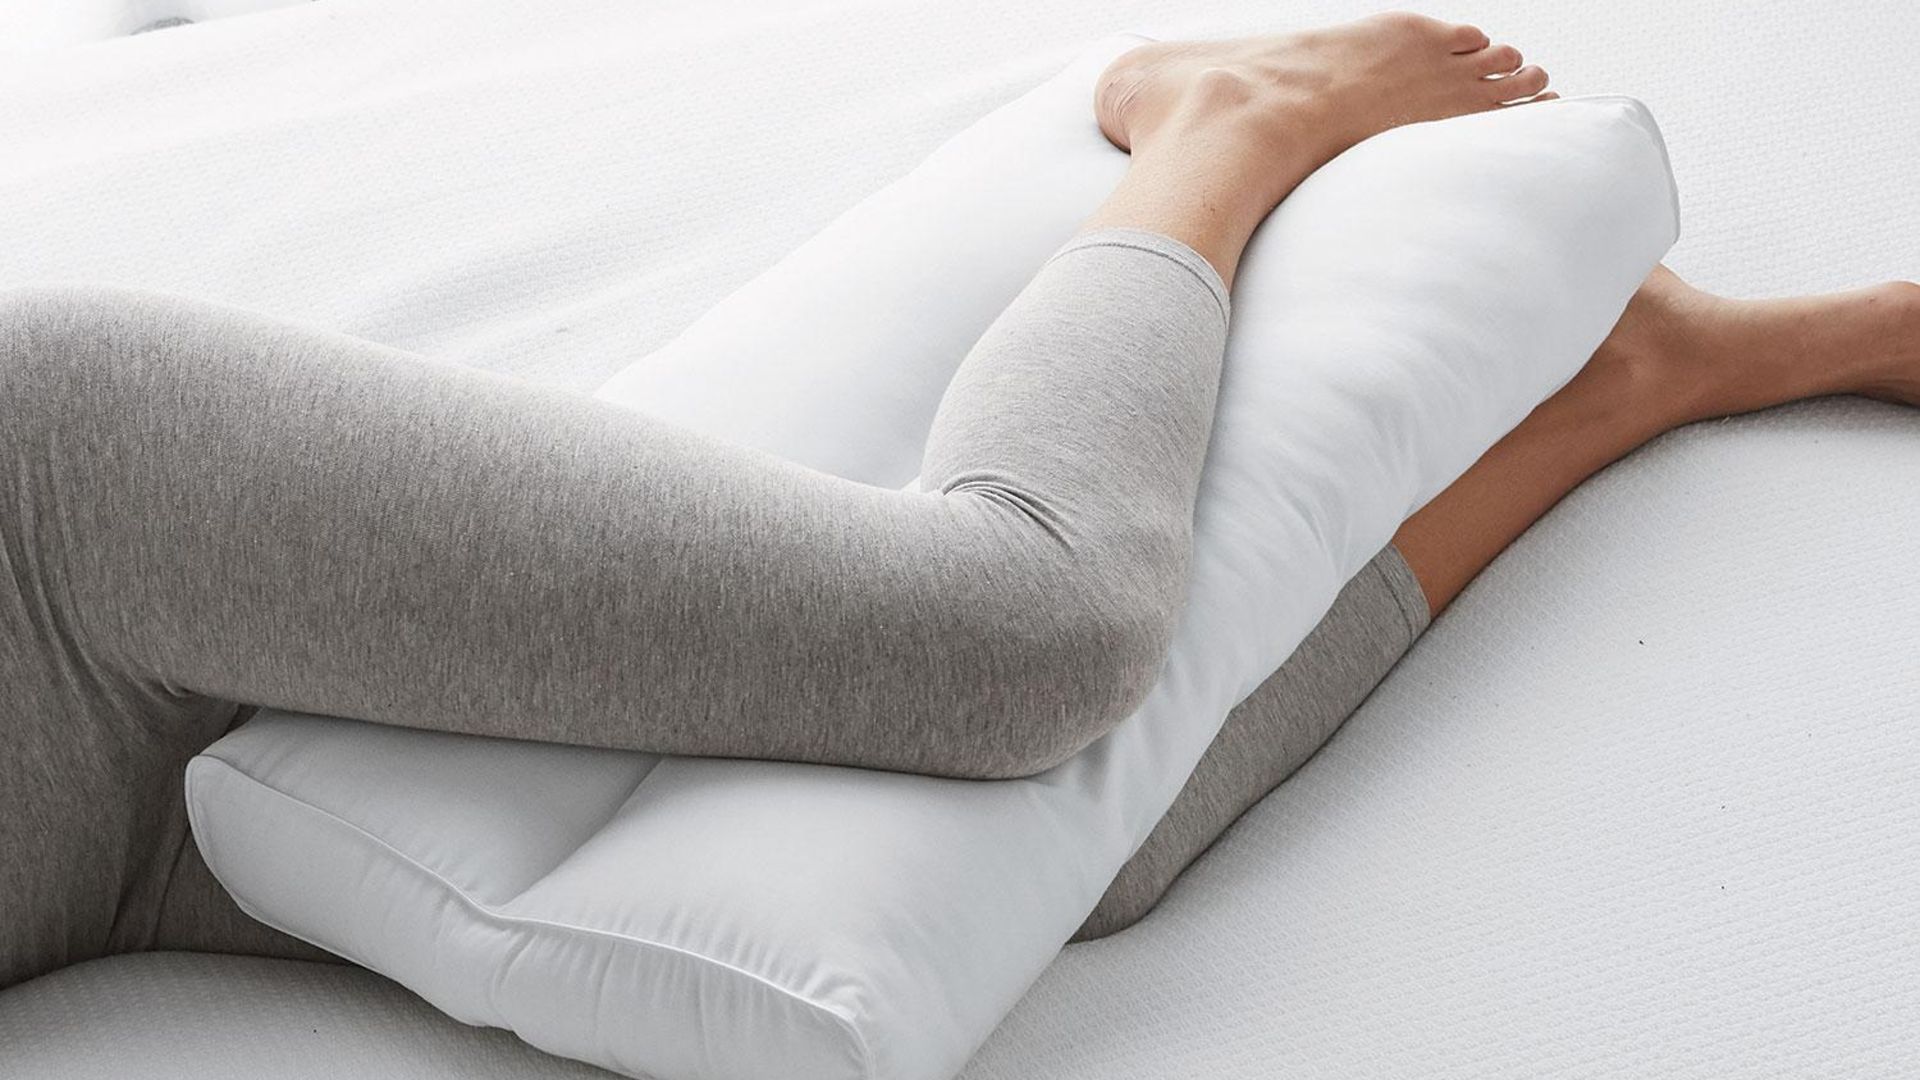 Bacaklarınızın arasına yastık koyarak uyursanız vücudunuza ne olur? | Sağlık